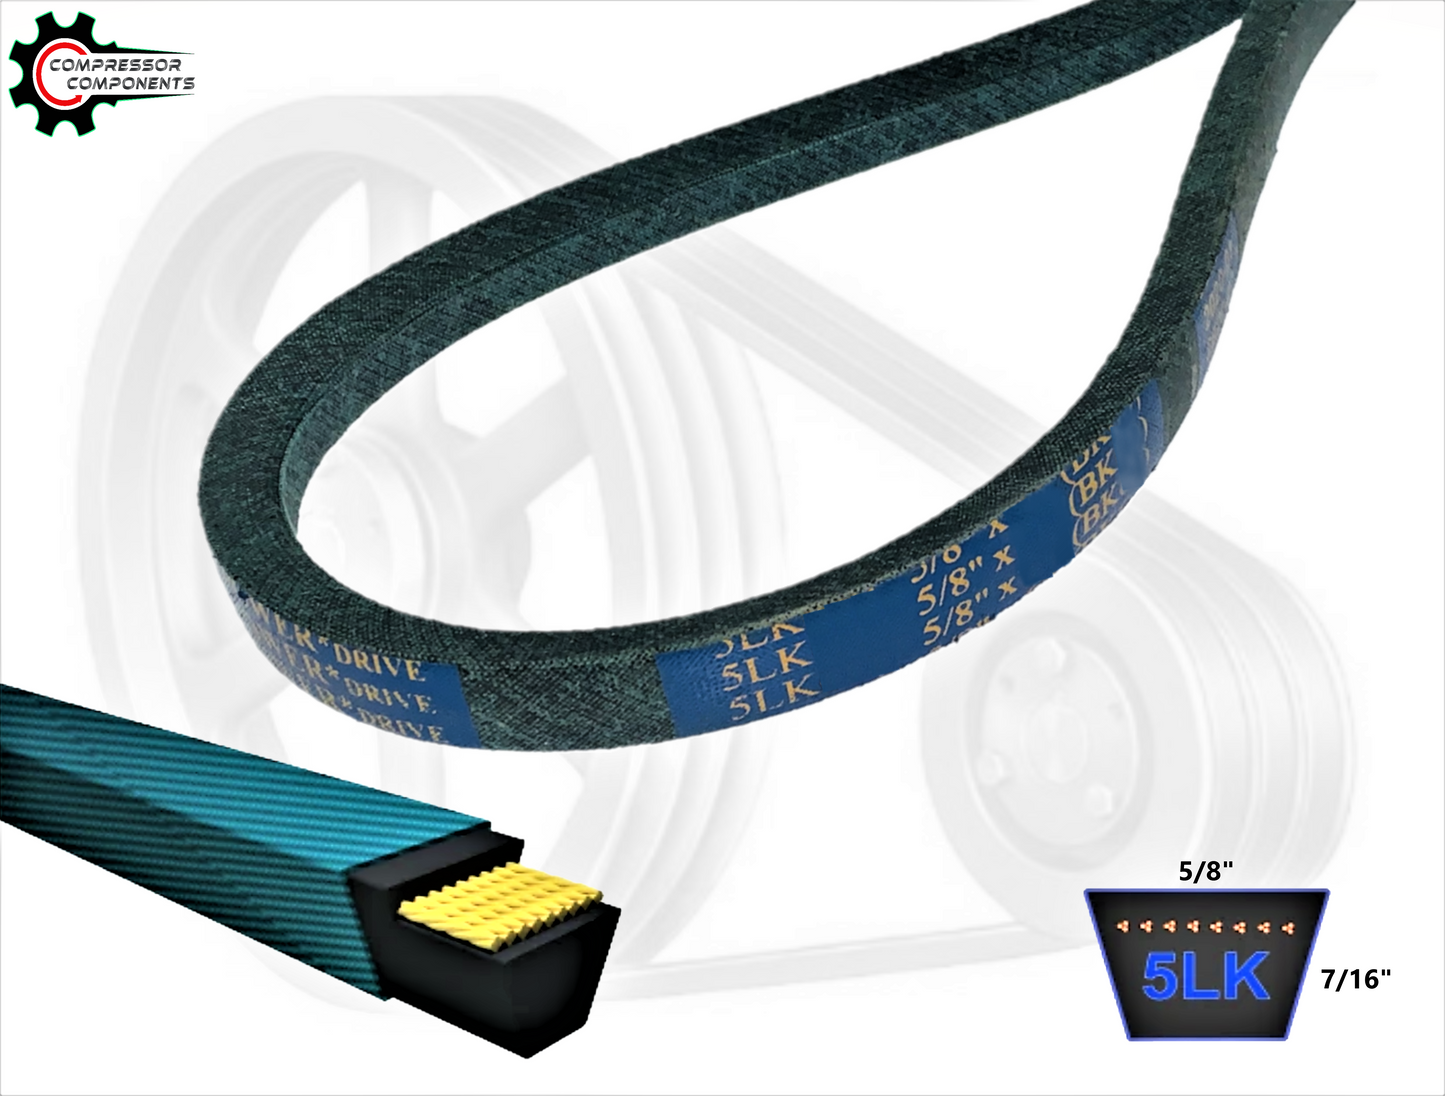 B25K / 5LK280 - D&D Dura-Ultimate Kevlar Reinforced V-Belt